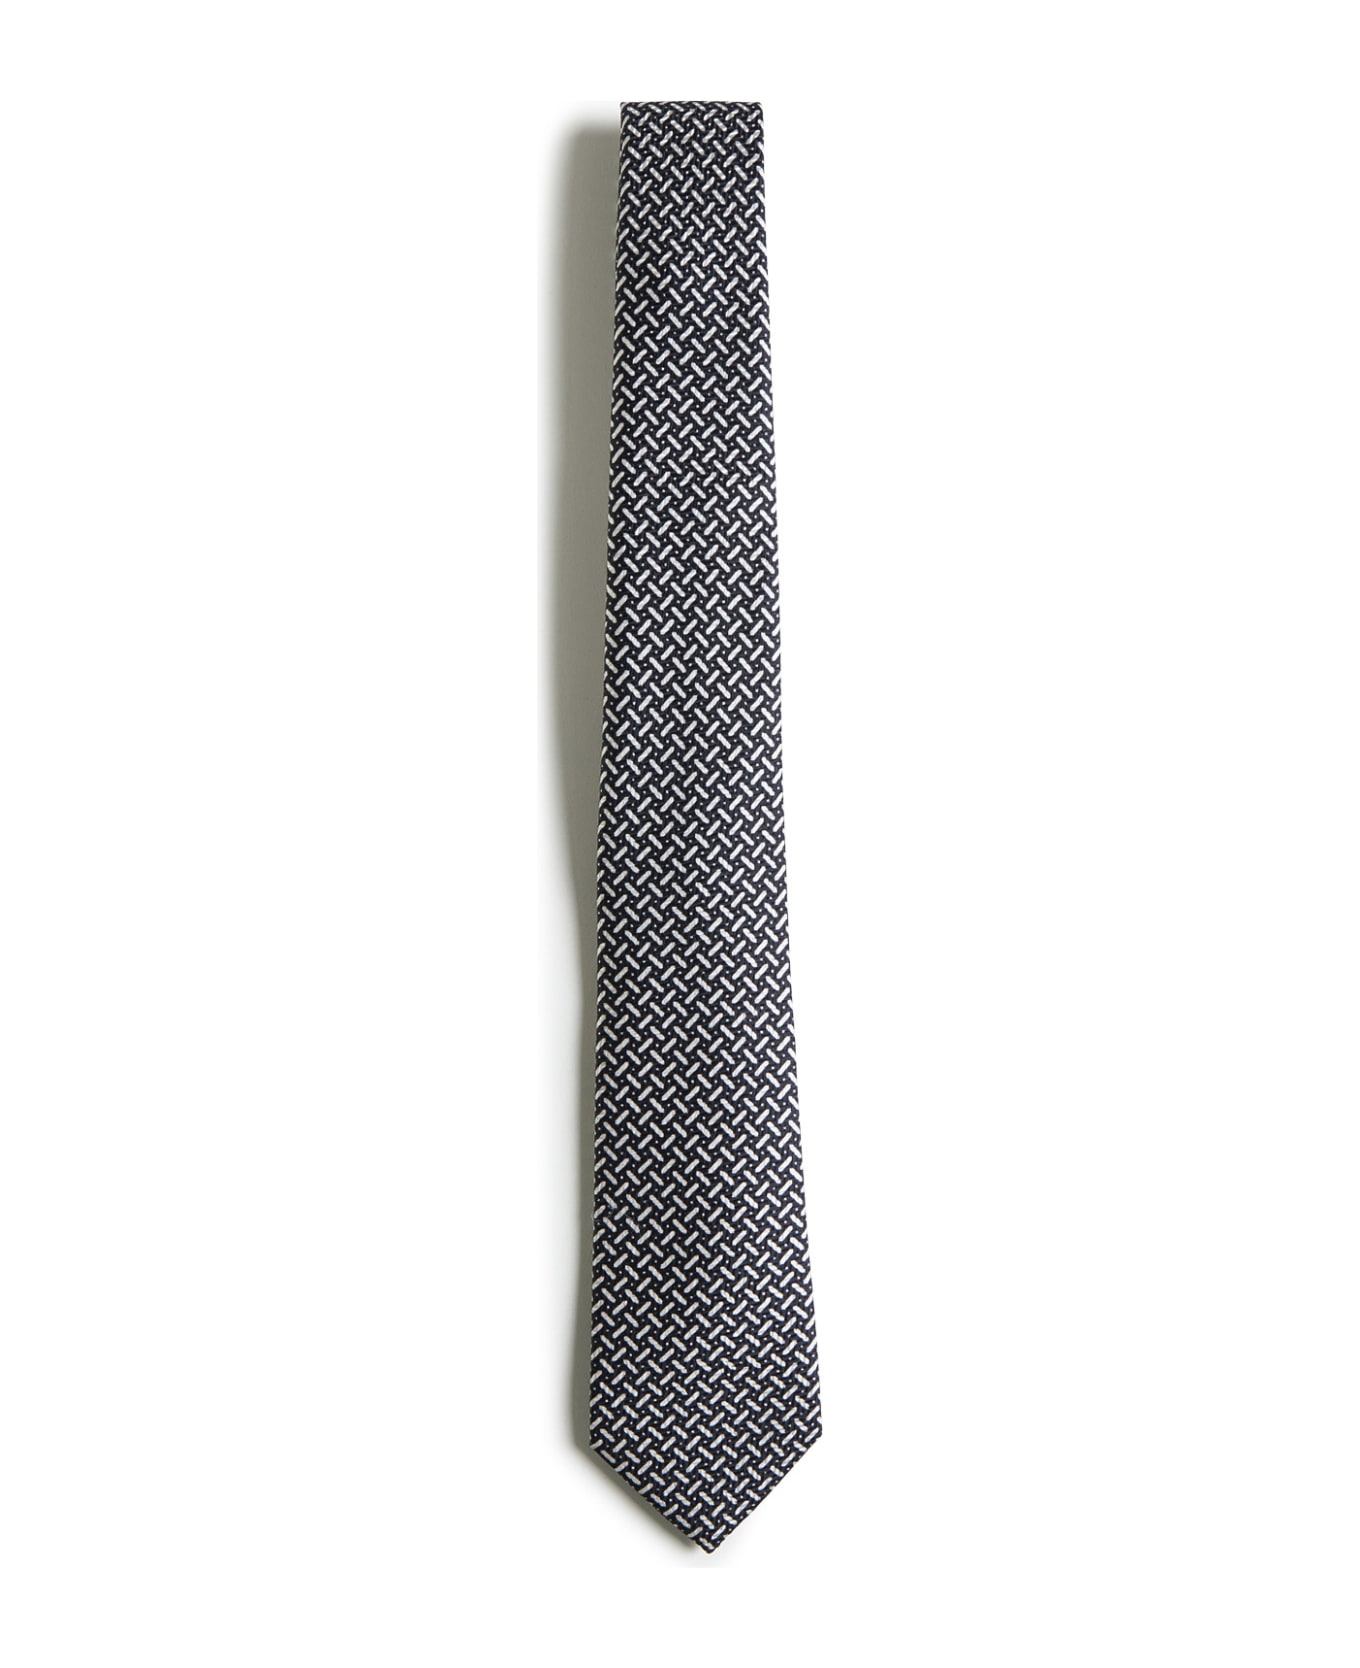 Giorgio Armani Tie - Black ネクタイ